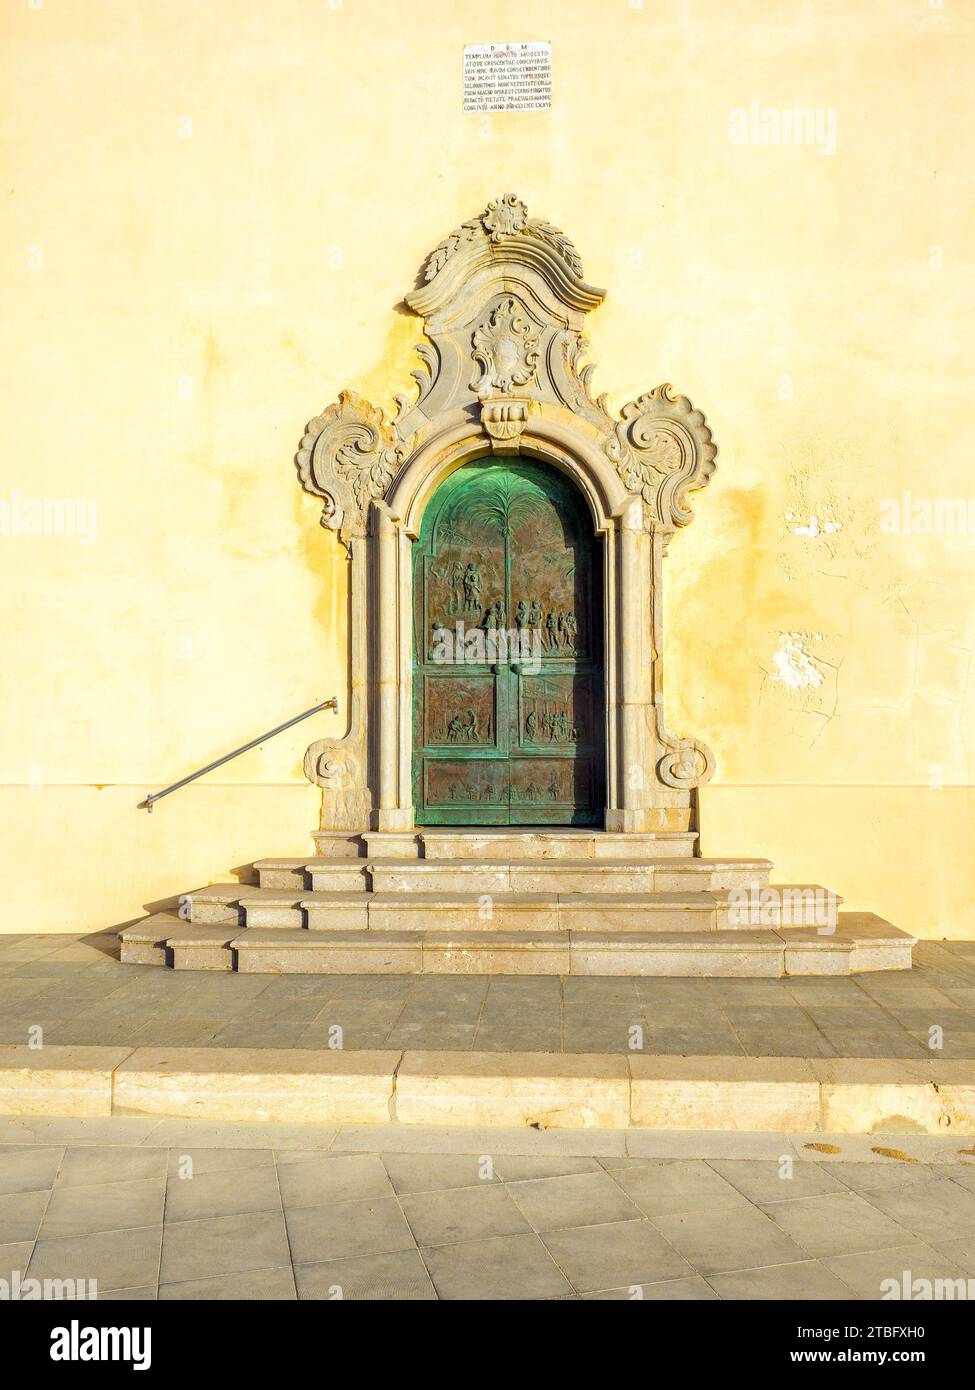 Tür des Santuario Diocesiano San Vito in riva di Mare (Diözesanheiligtum San Vito am Meer) - Mazara del Vallo, Sizilien, Italien Stockfoto